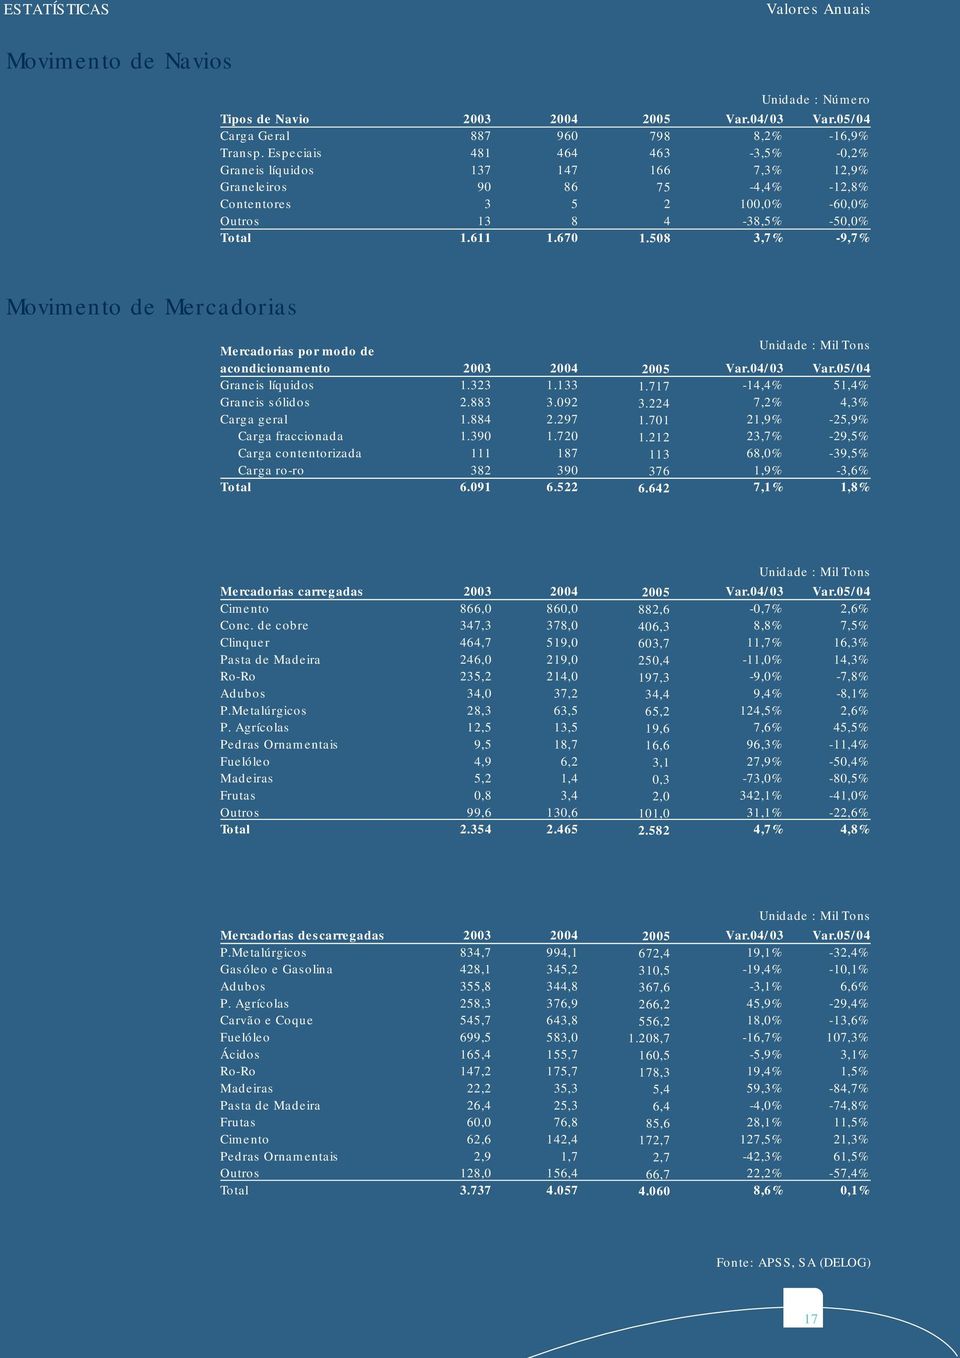 05/04-16,9% -0,2% 12,9% -12,8% -60,0% -50,0% -9,7% Movimento de Mercadorias Mercadorias por modo de acondicionamento Graneis líquidos Graneis sólidos Carga geral Carga fraccionada Carga